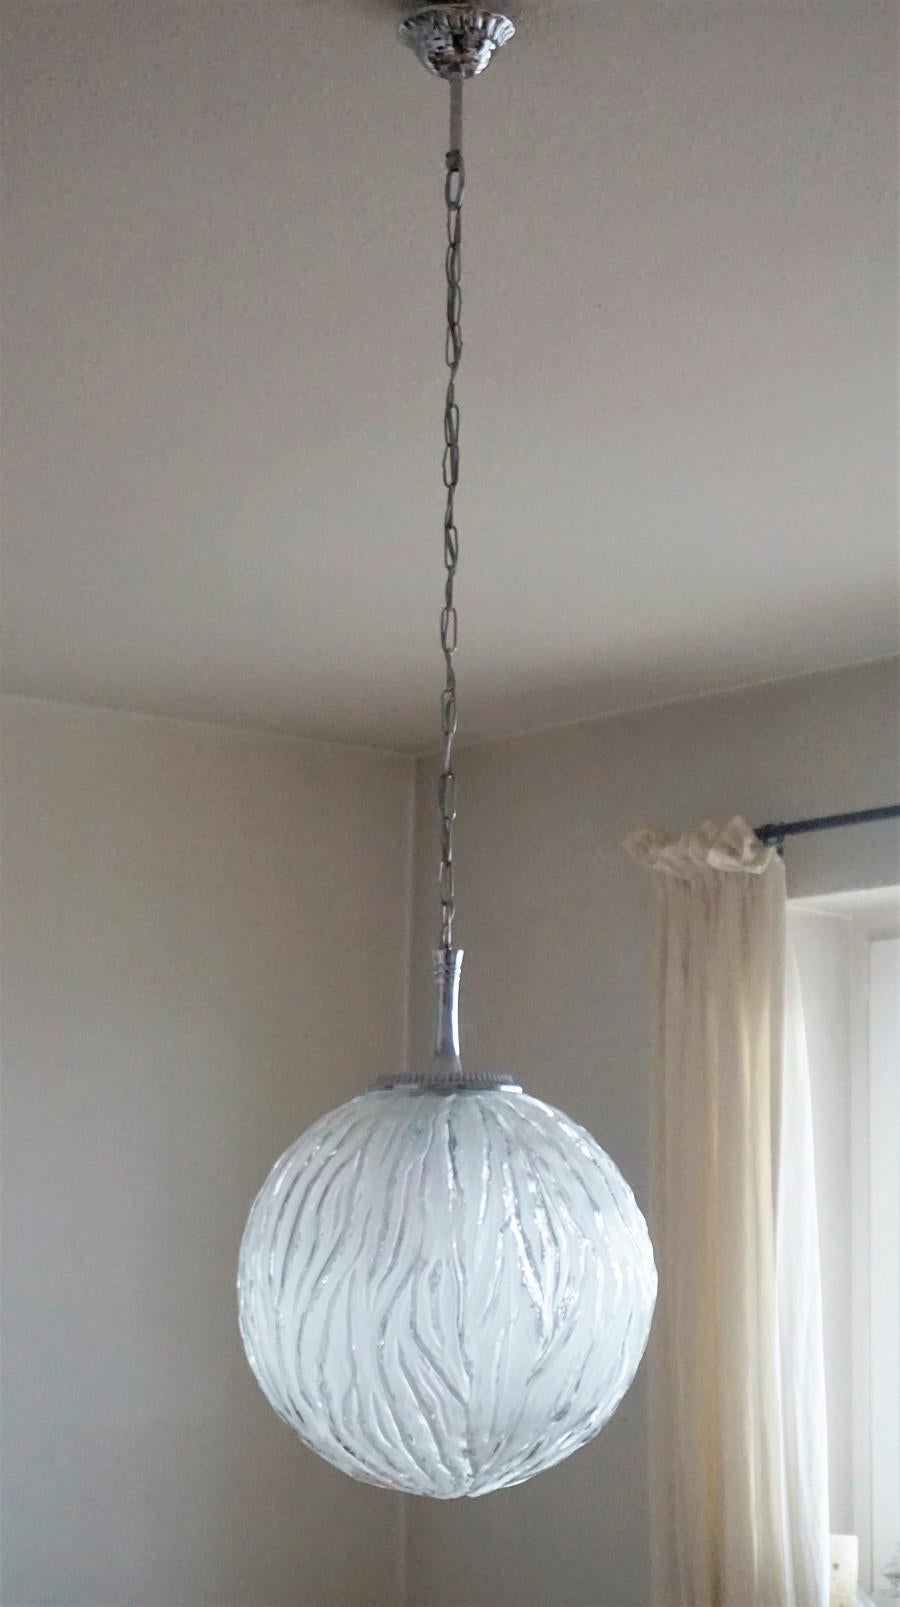 Paire de pendentifs ou de lanternes en forme de sphère en verre de style Degue avec des montures chromées, France, années 1950.
Une douille Edison E27 pour une ampoule de grande taille jusqu'à 100W
les deux pendentifs sont en très bon état, refaits